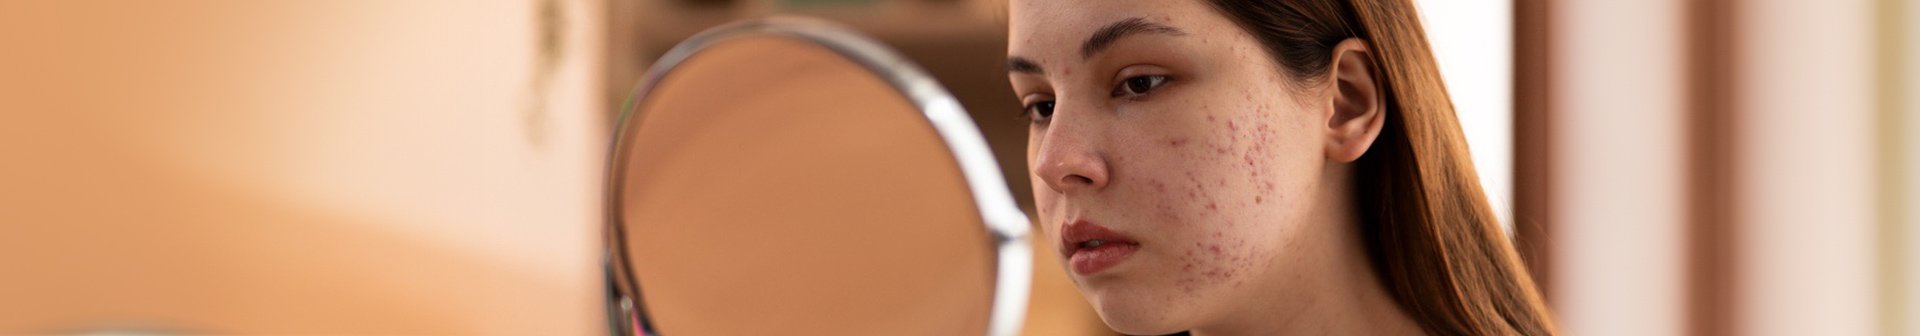 Eine junge Frau betrachtet ihr Gesicht in einem runden Spiegel